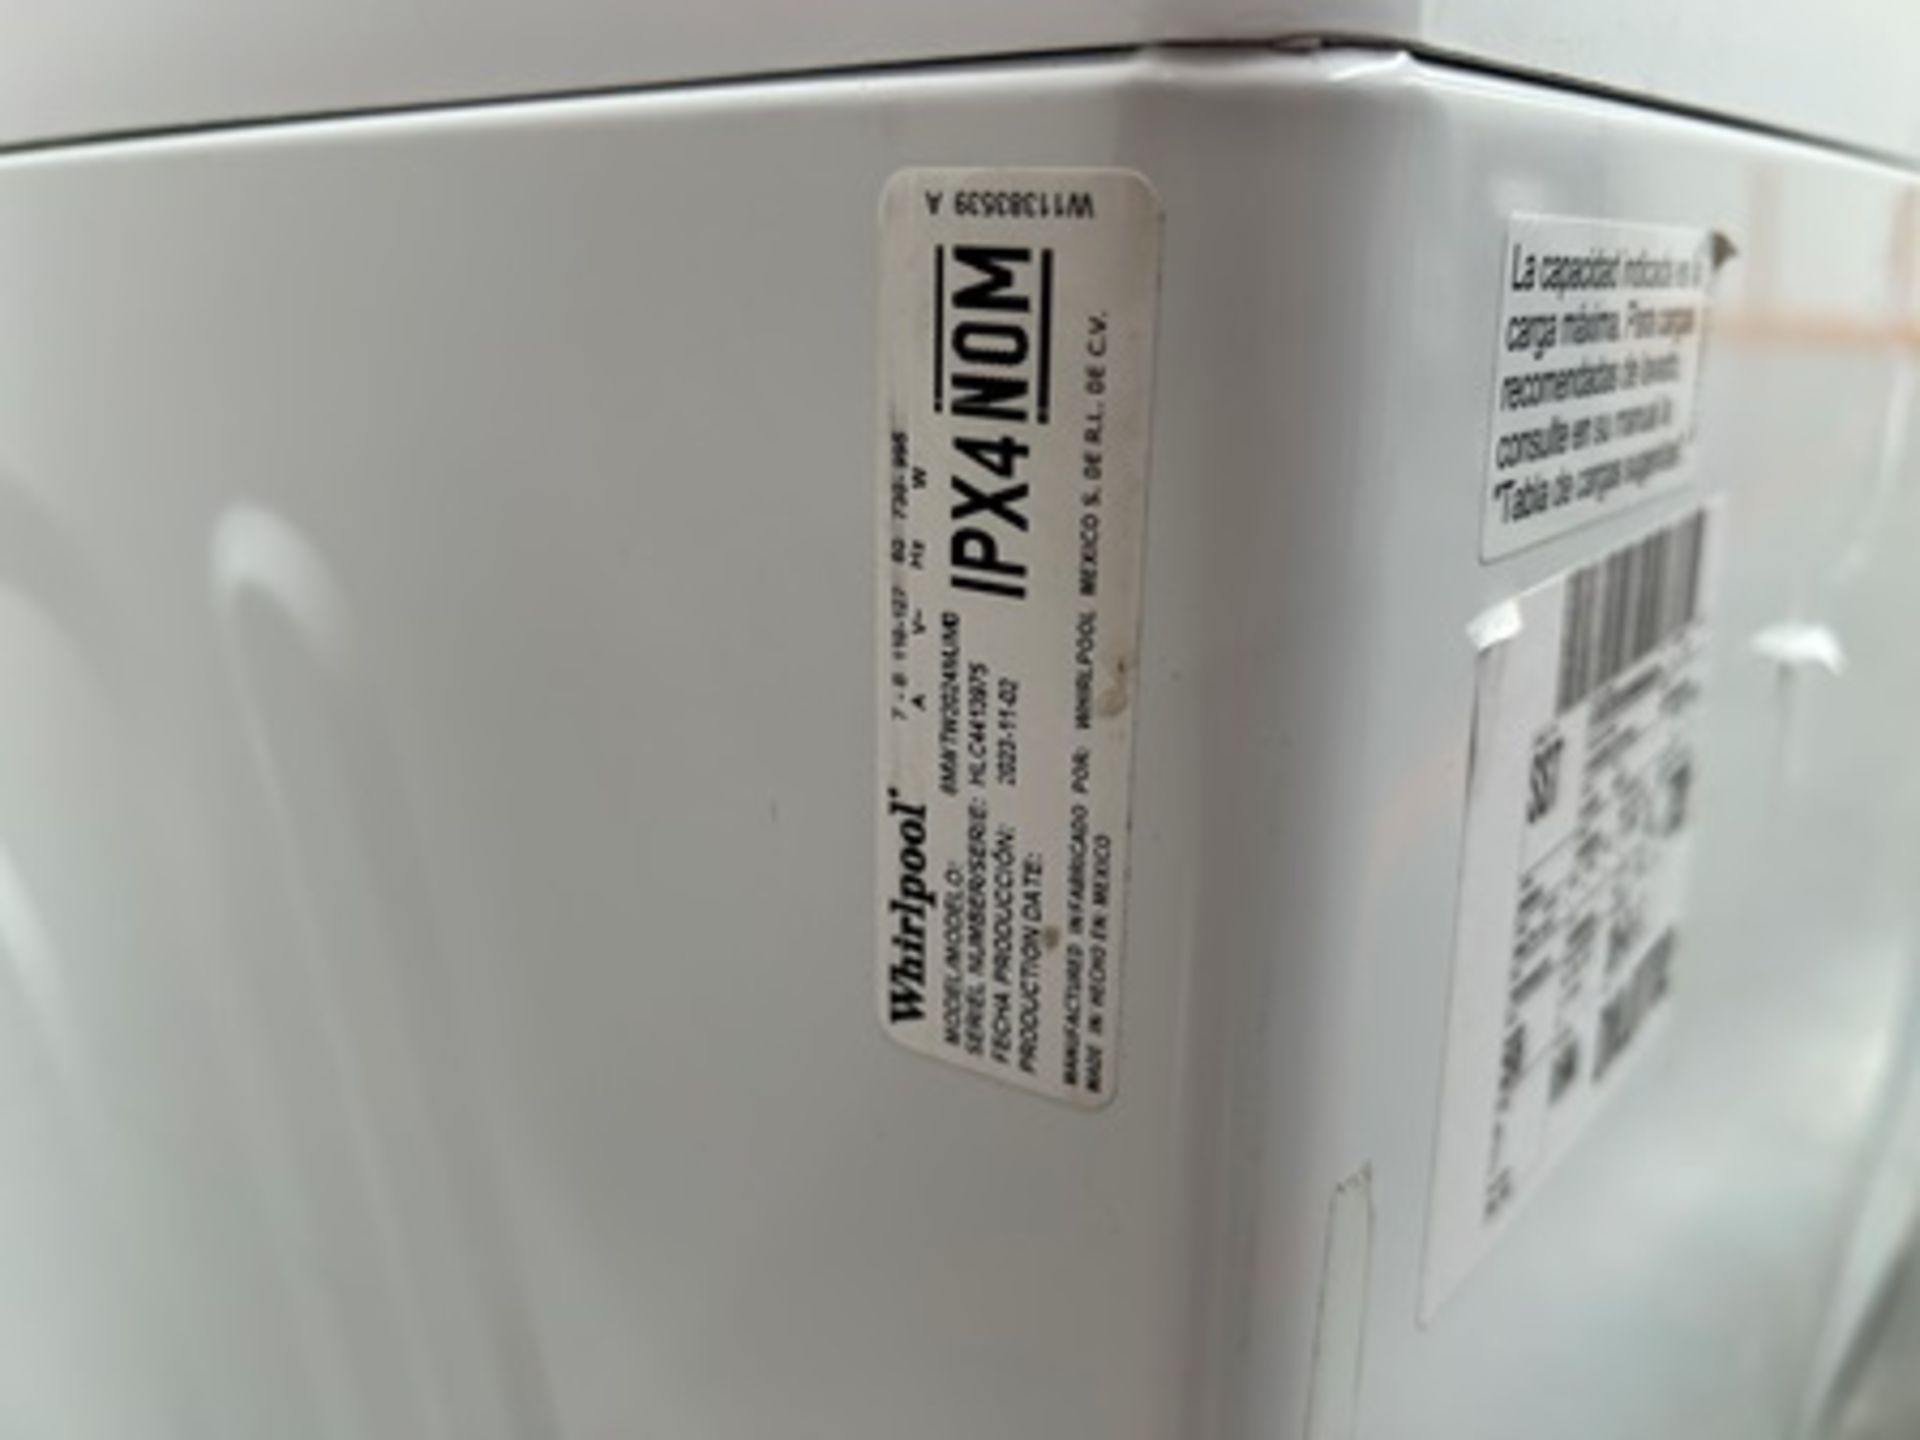 Lote de 2 lavadoras contiene: 1 Lavadora de 22 KG Marca WHIRPOOL, Modelo 8MWTW2224MPM0 - Image 6 of 10